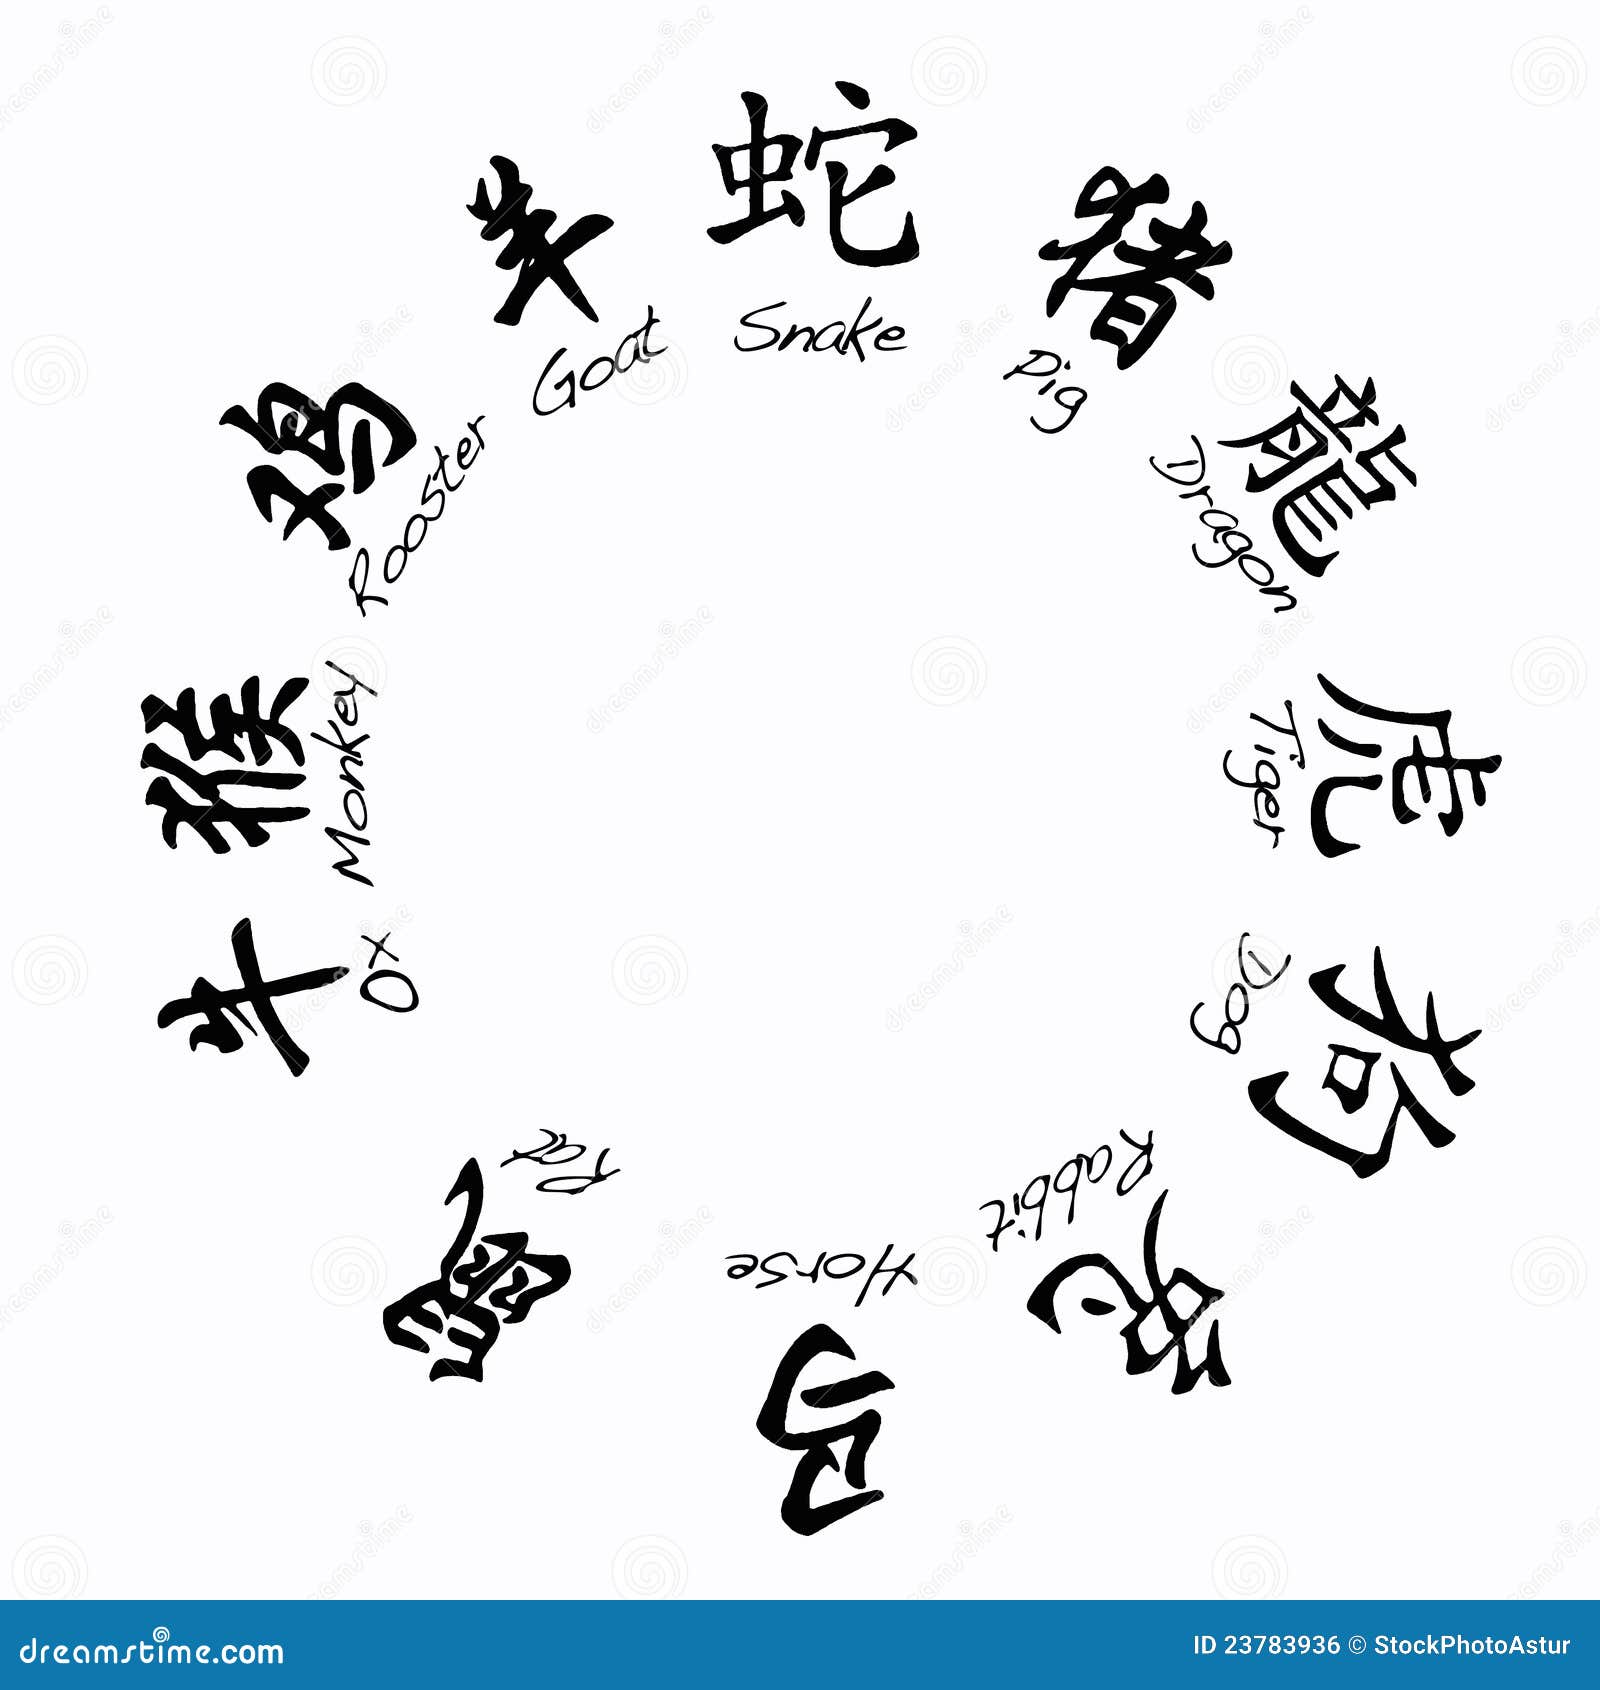 Знаки зодиака на китайском. Знаки зодиака на китайском языке. Астрологические знаки в Китае. Стоковые картинки о китайской астрологии. Рамочка для текста с китайскими символами.